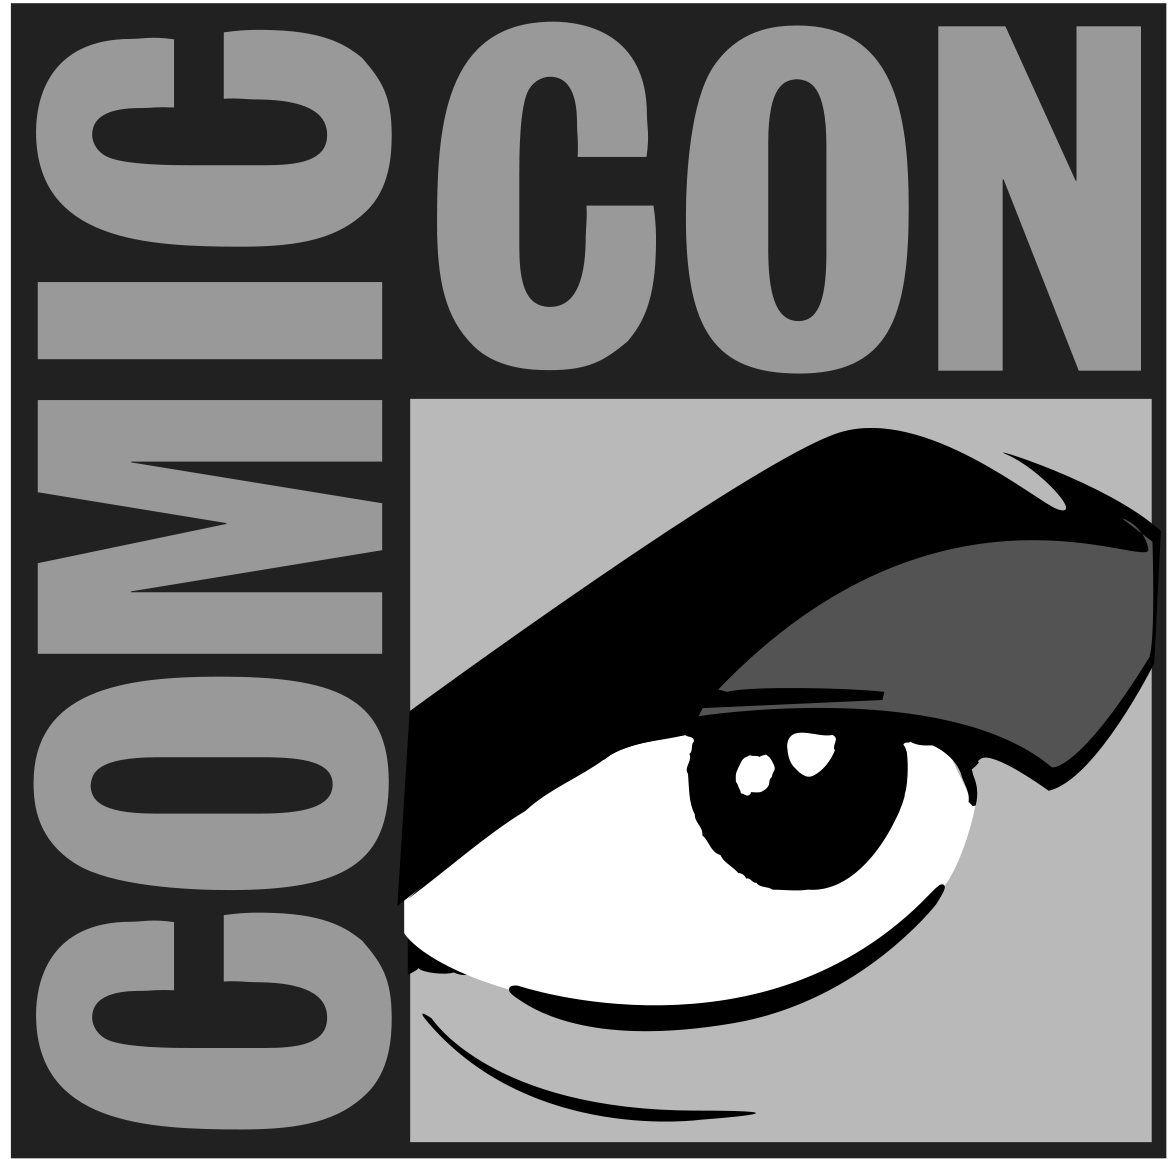 Comicon Logo